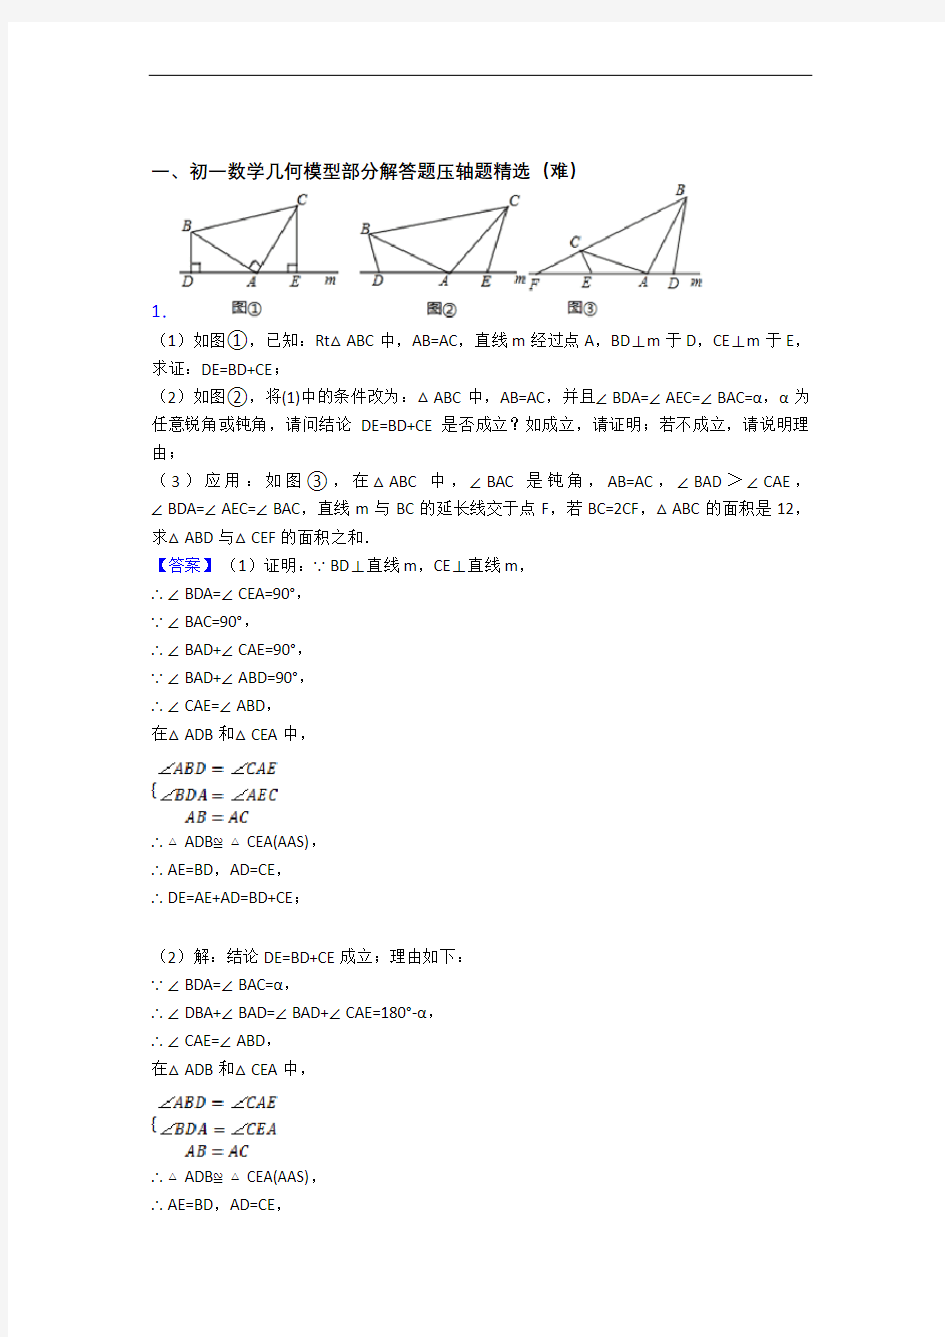 上海杨浦高级中学数学几何图形初步中考真题汇编[解析版]